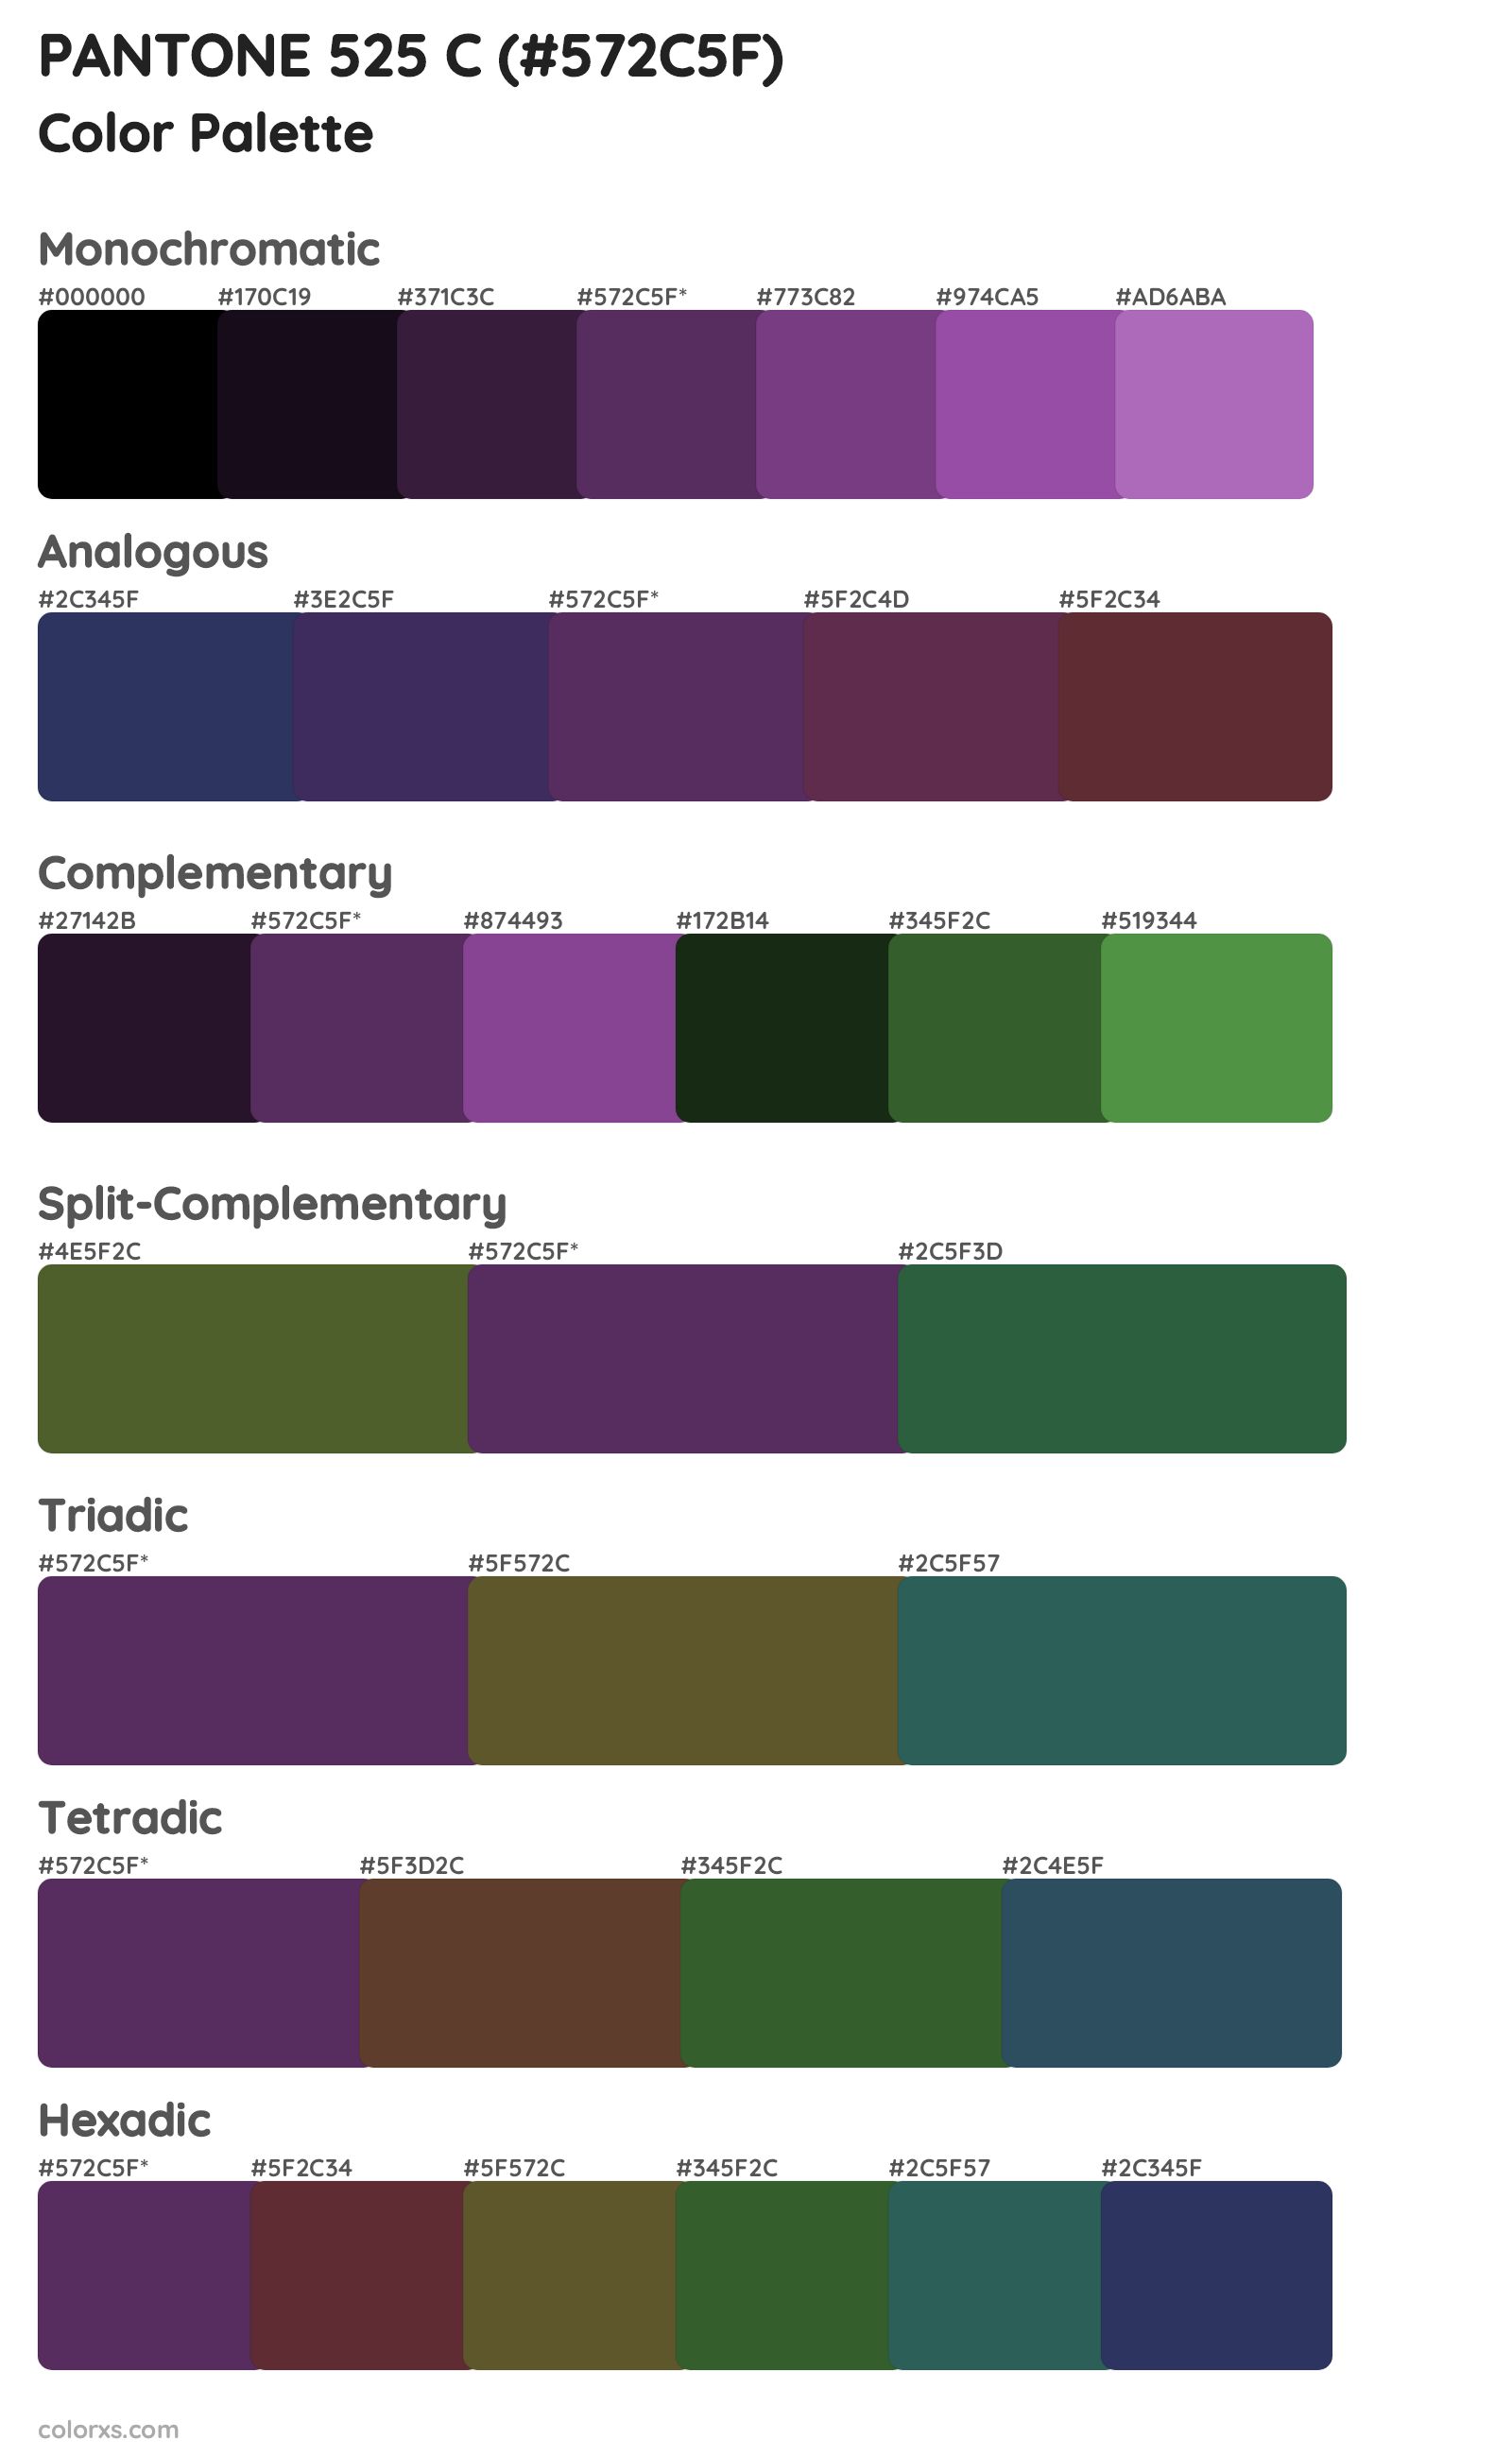 PANTONE 525 C Color Scheme Palettes